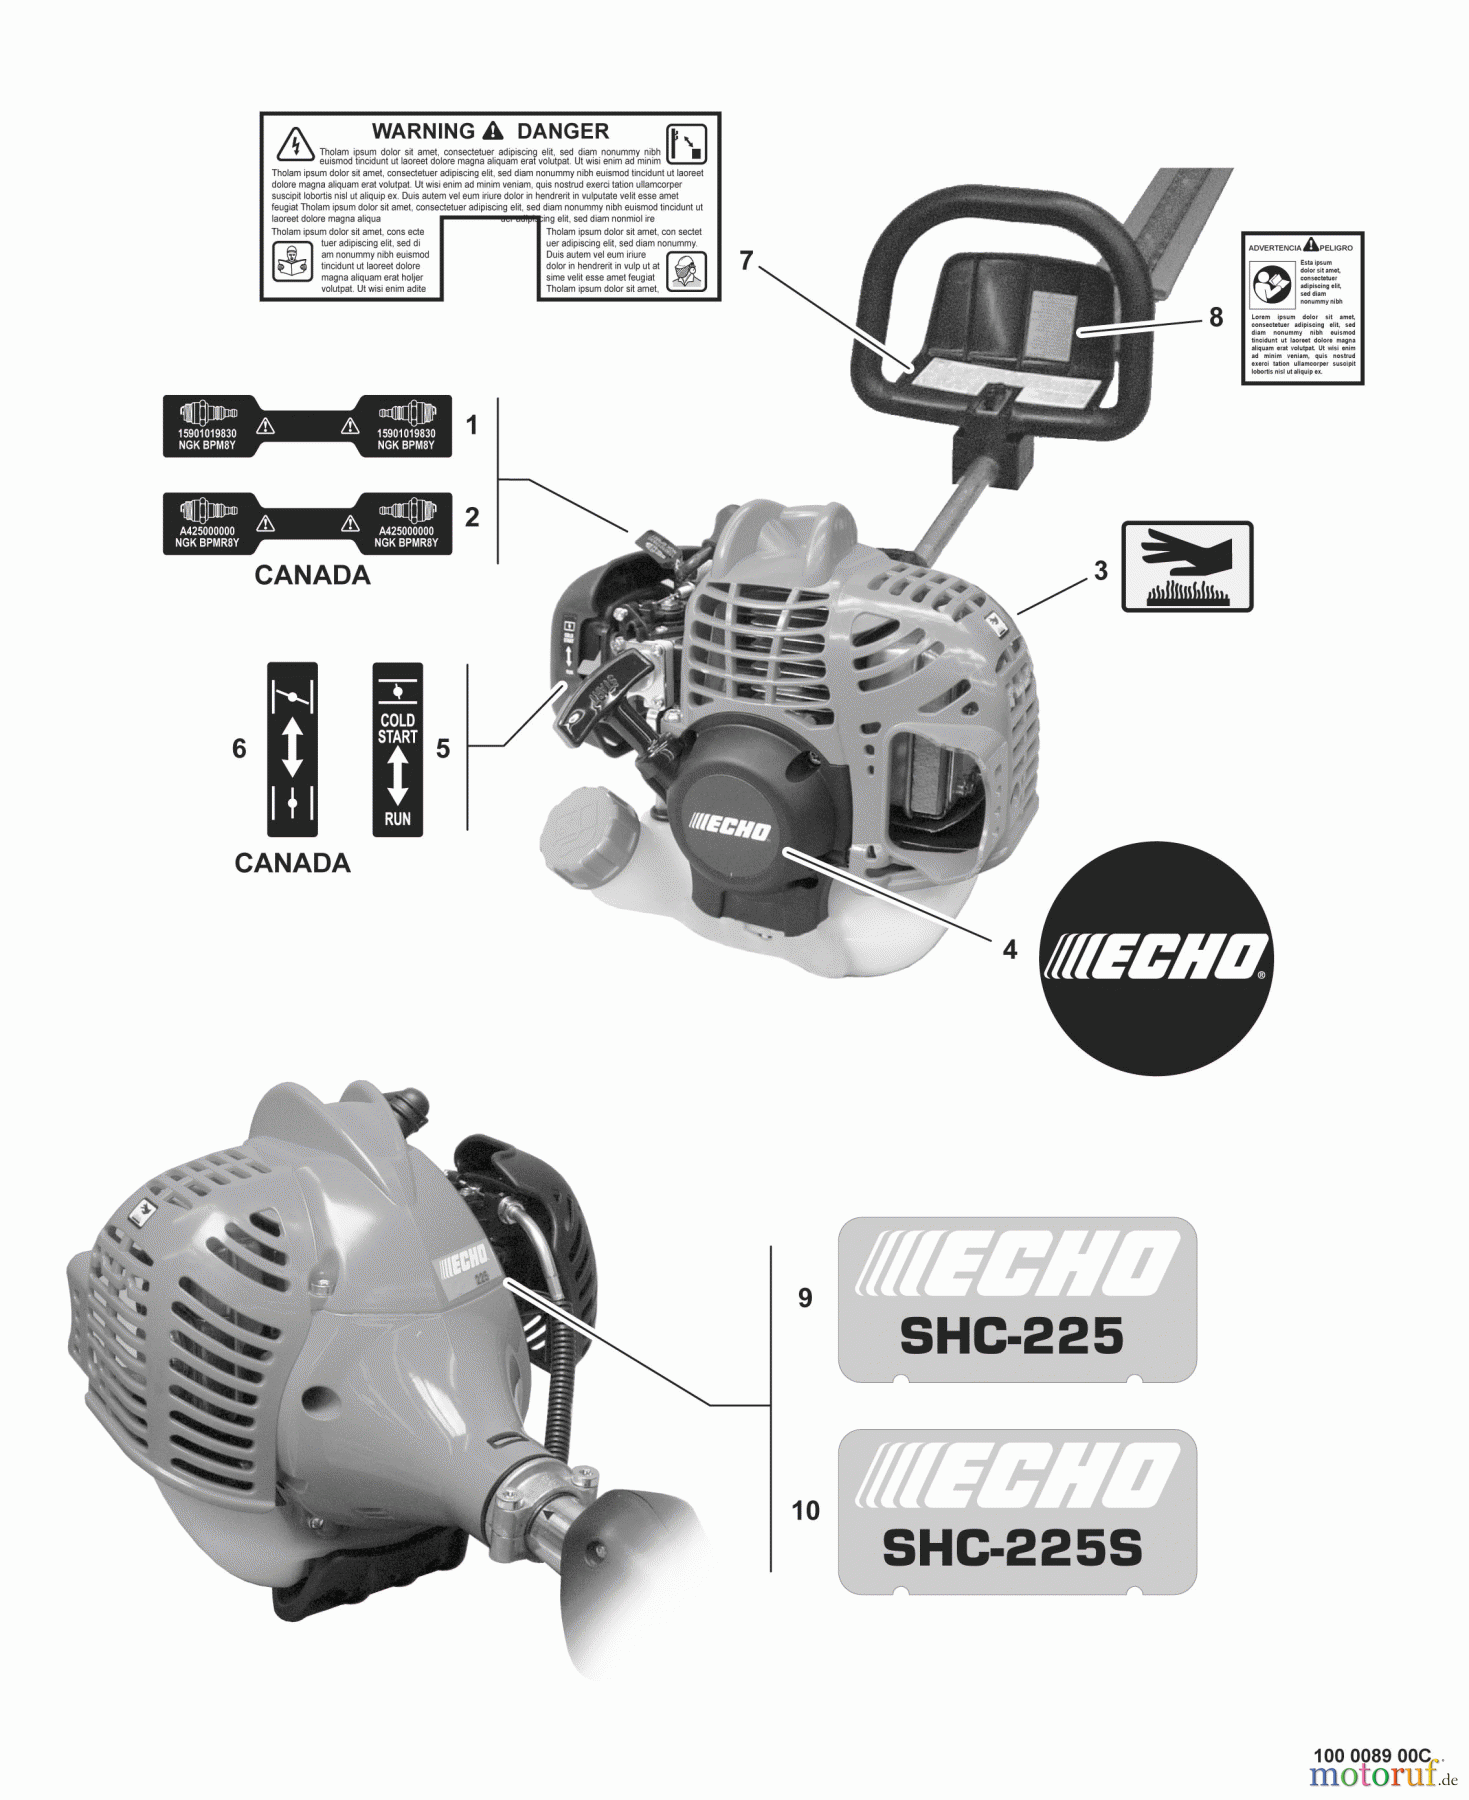  Echo Heckenscheren SHC-225 - Echo Shaft Hedge Trimmer, S/N: S85312001001 - S85312999999 Labels